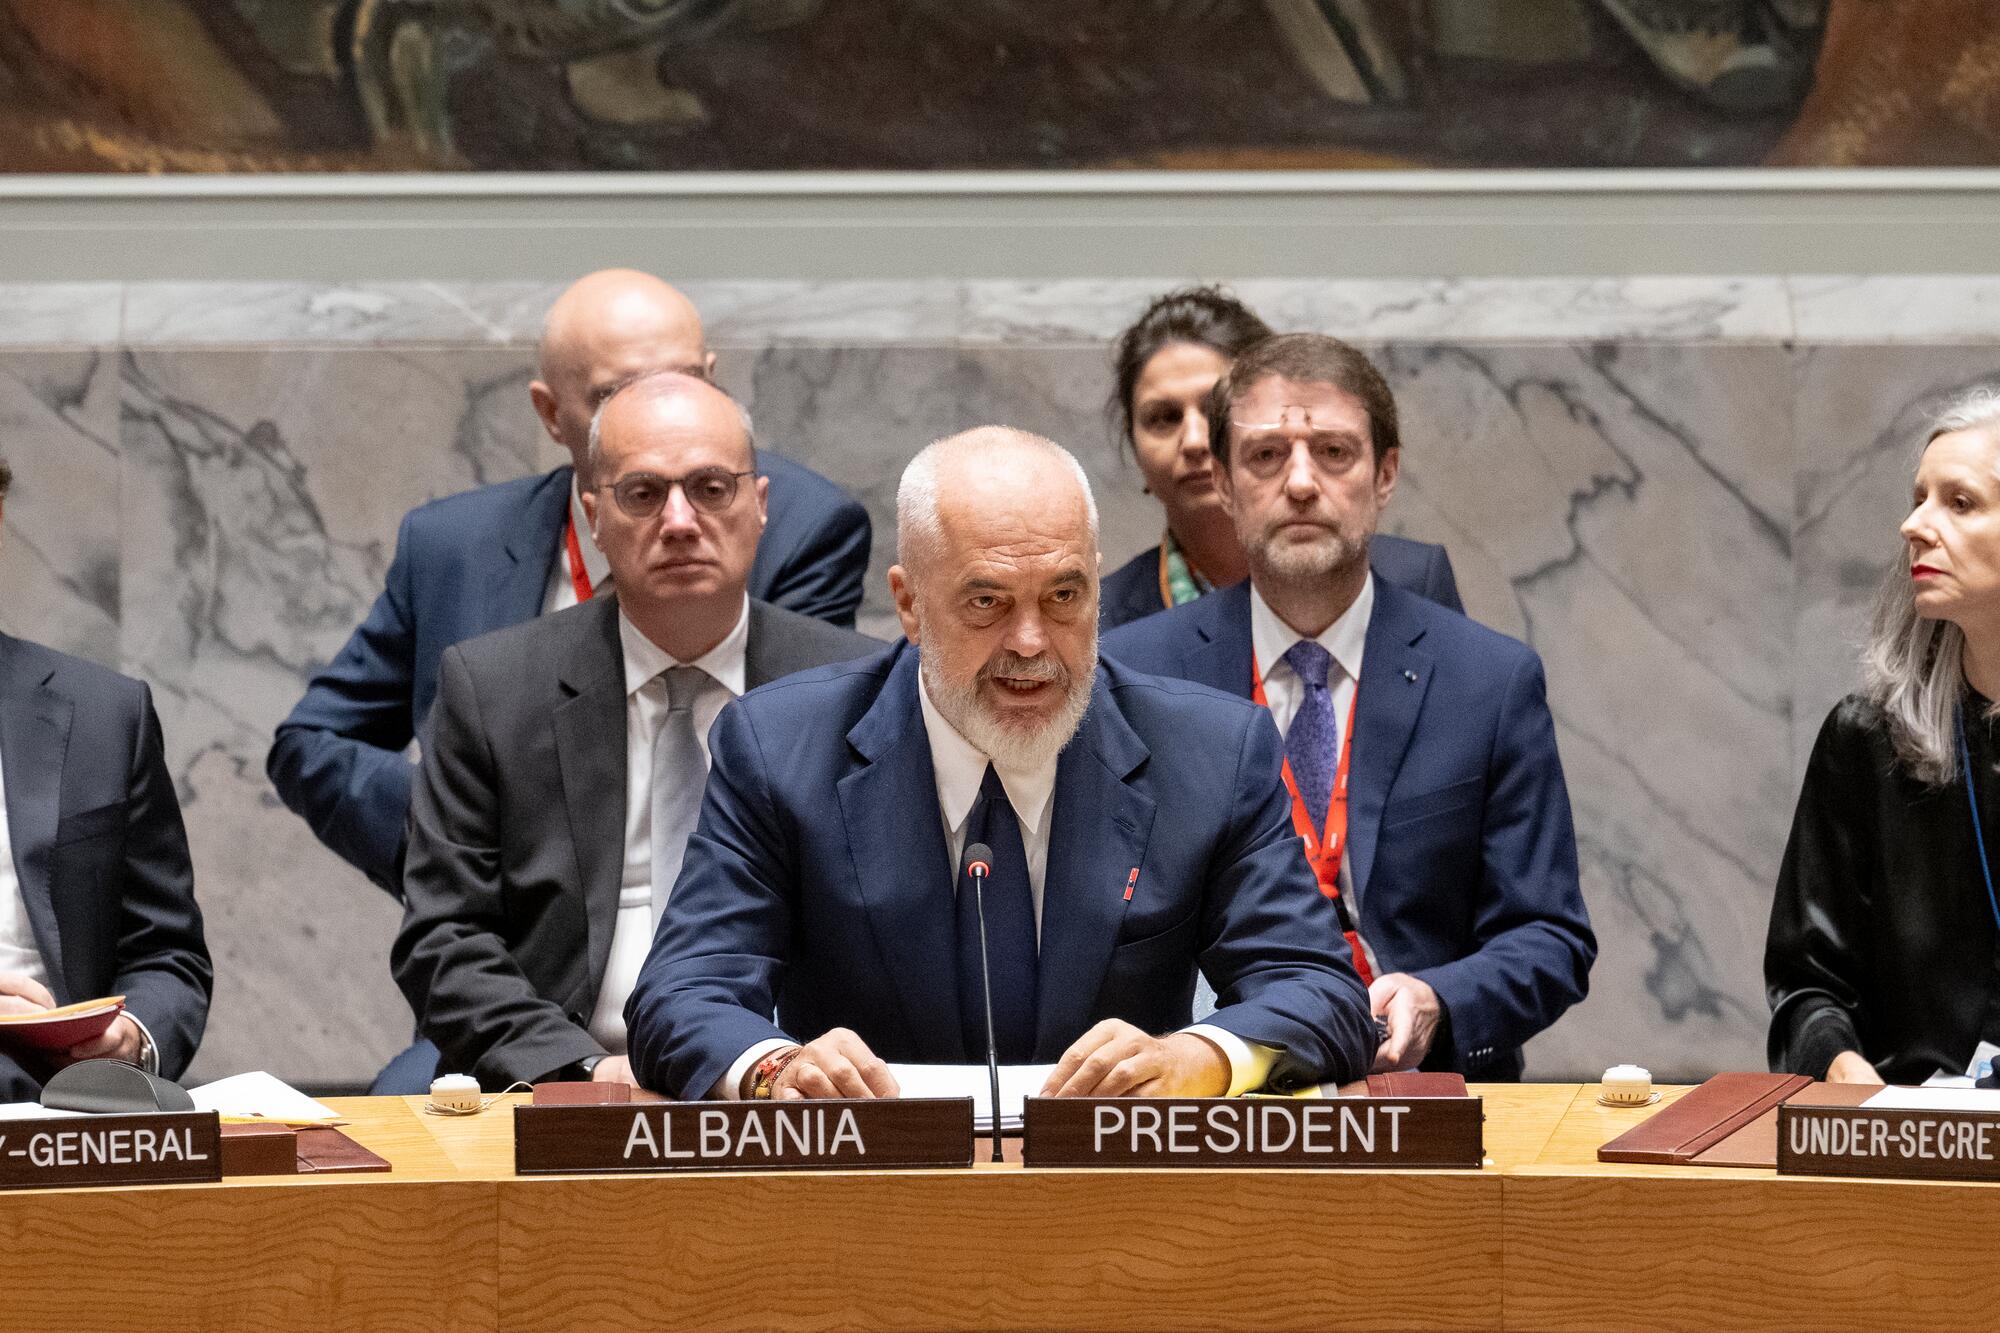 Mbledhja e Këshillit të Sigurimit të OKB-së u zhvillua në Nju Jork nën kryesimin e Shqipërisë